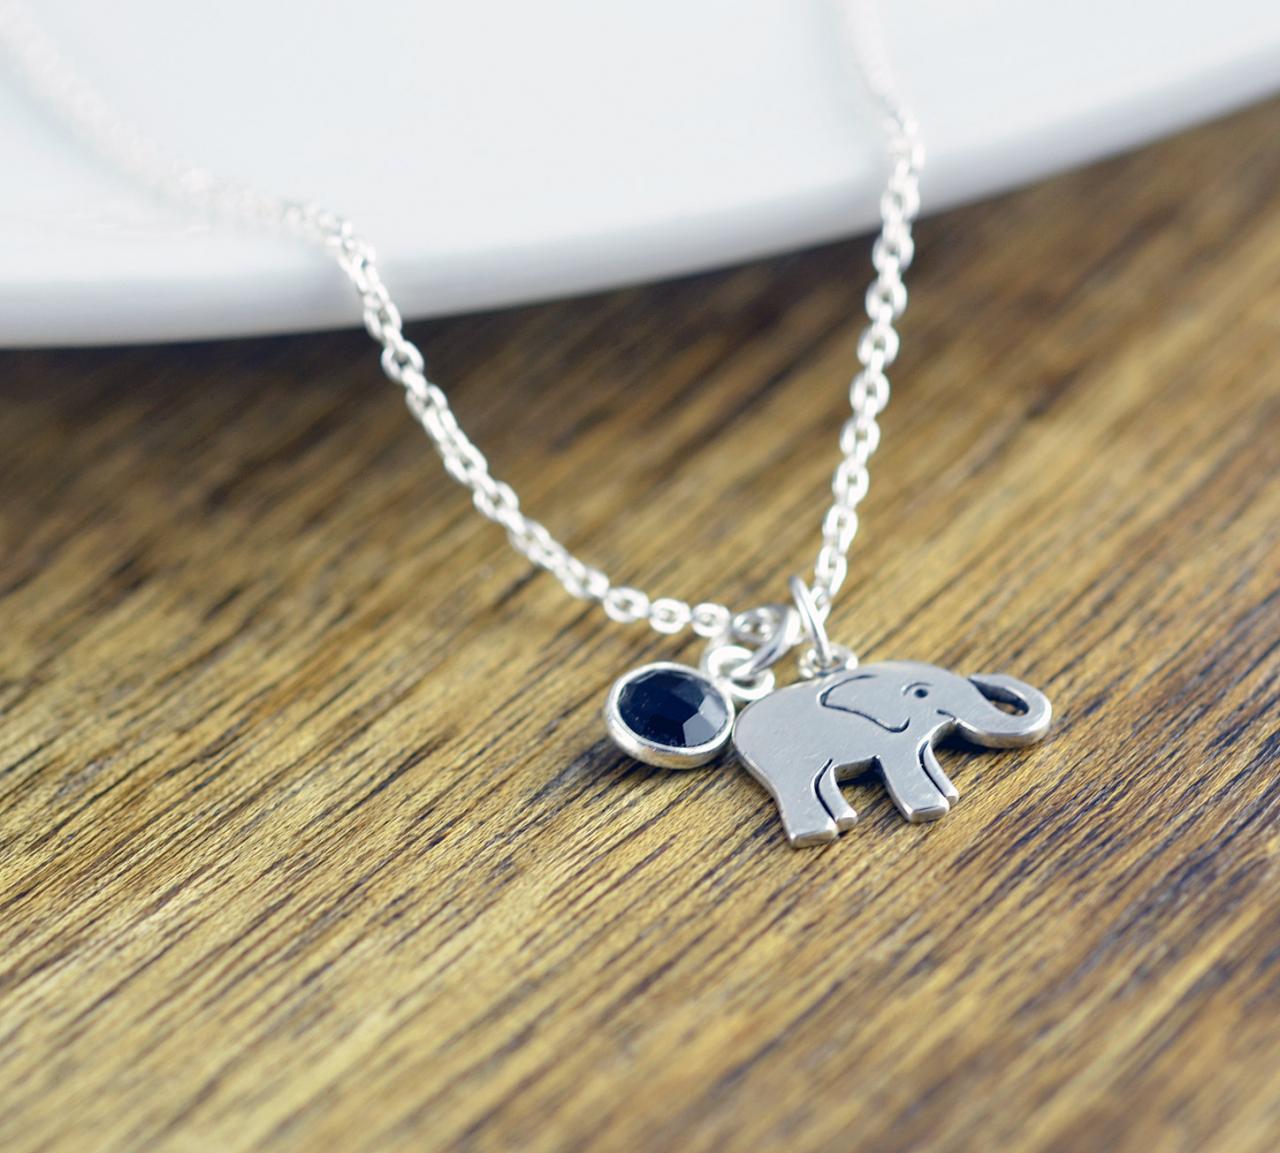 Elephant Necklace - Elephant Jewelry - Gemstone Necklace - Good Luck Elephant Necklace - Yoga Necklace - Yoga Jewelry - Christmas Gifts